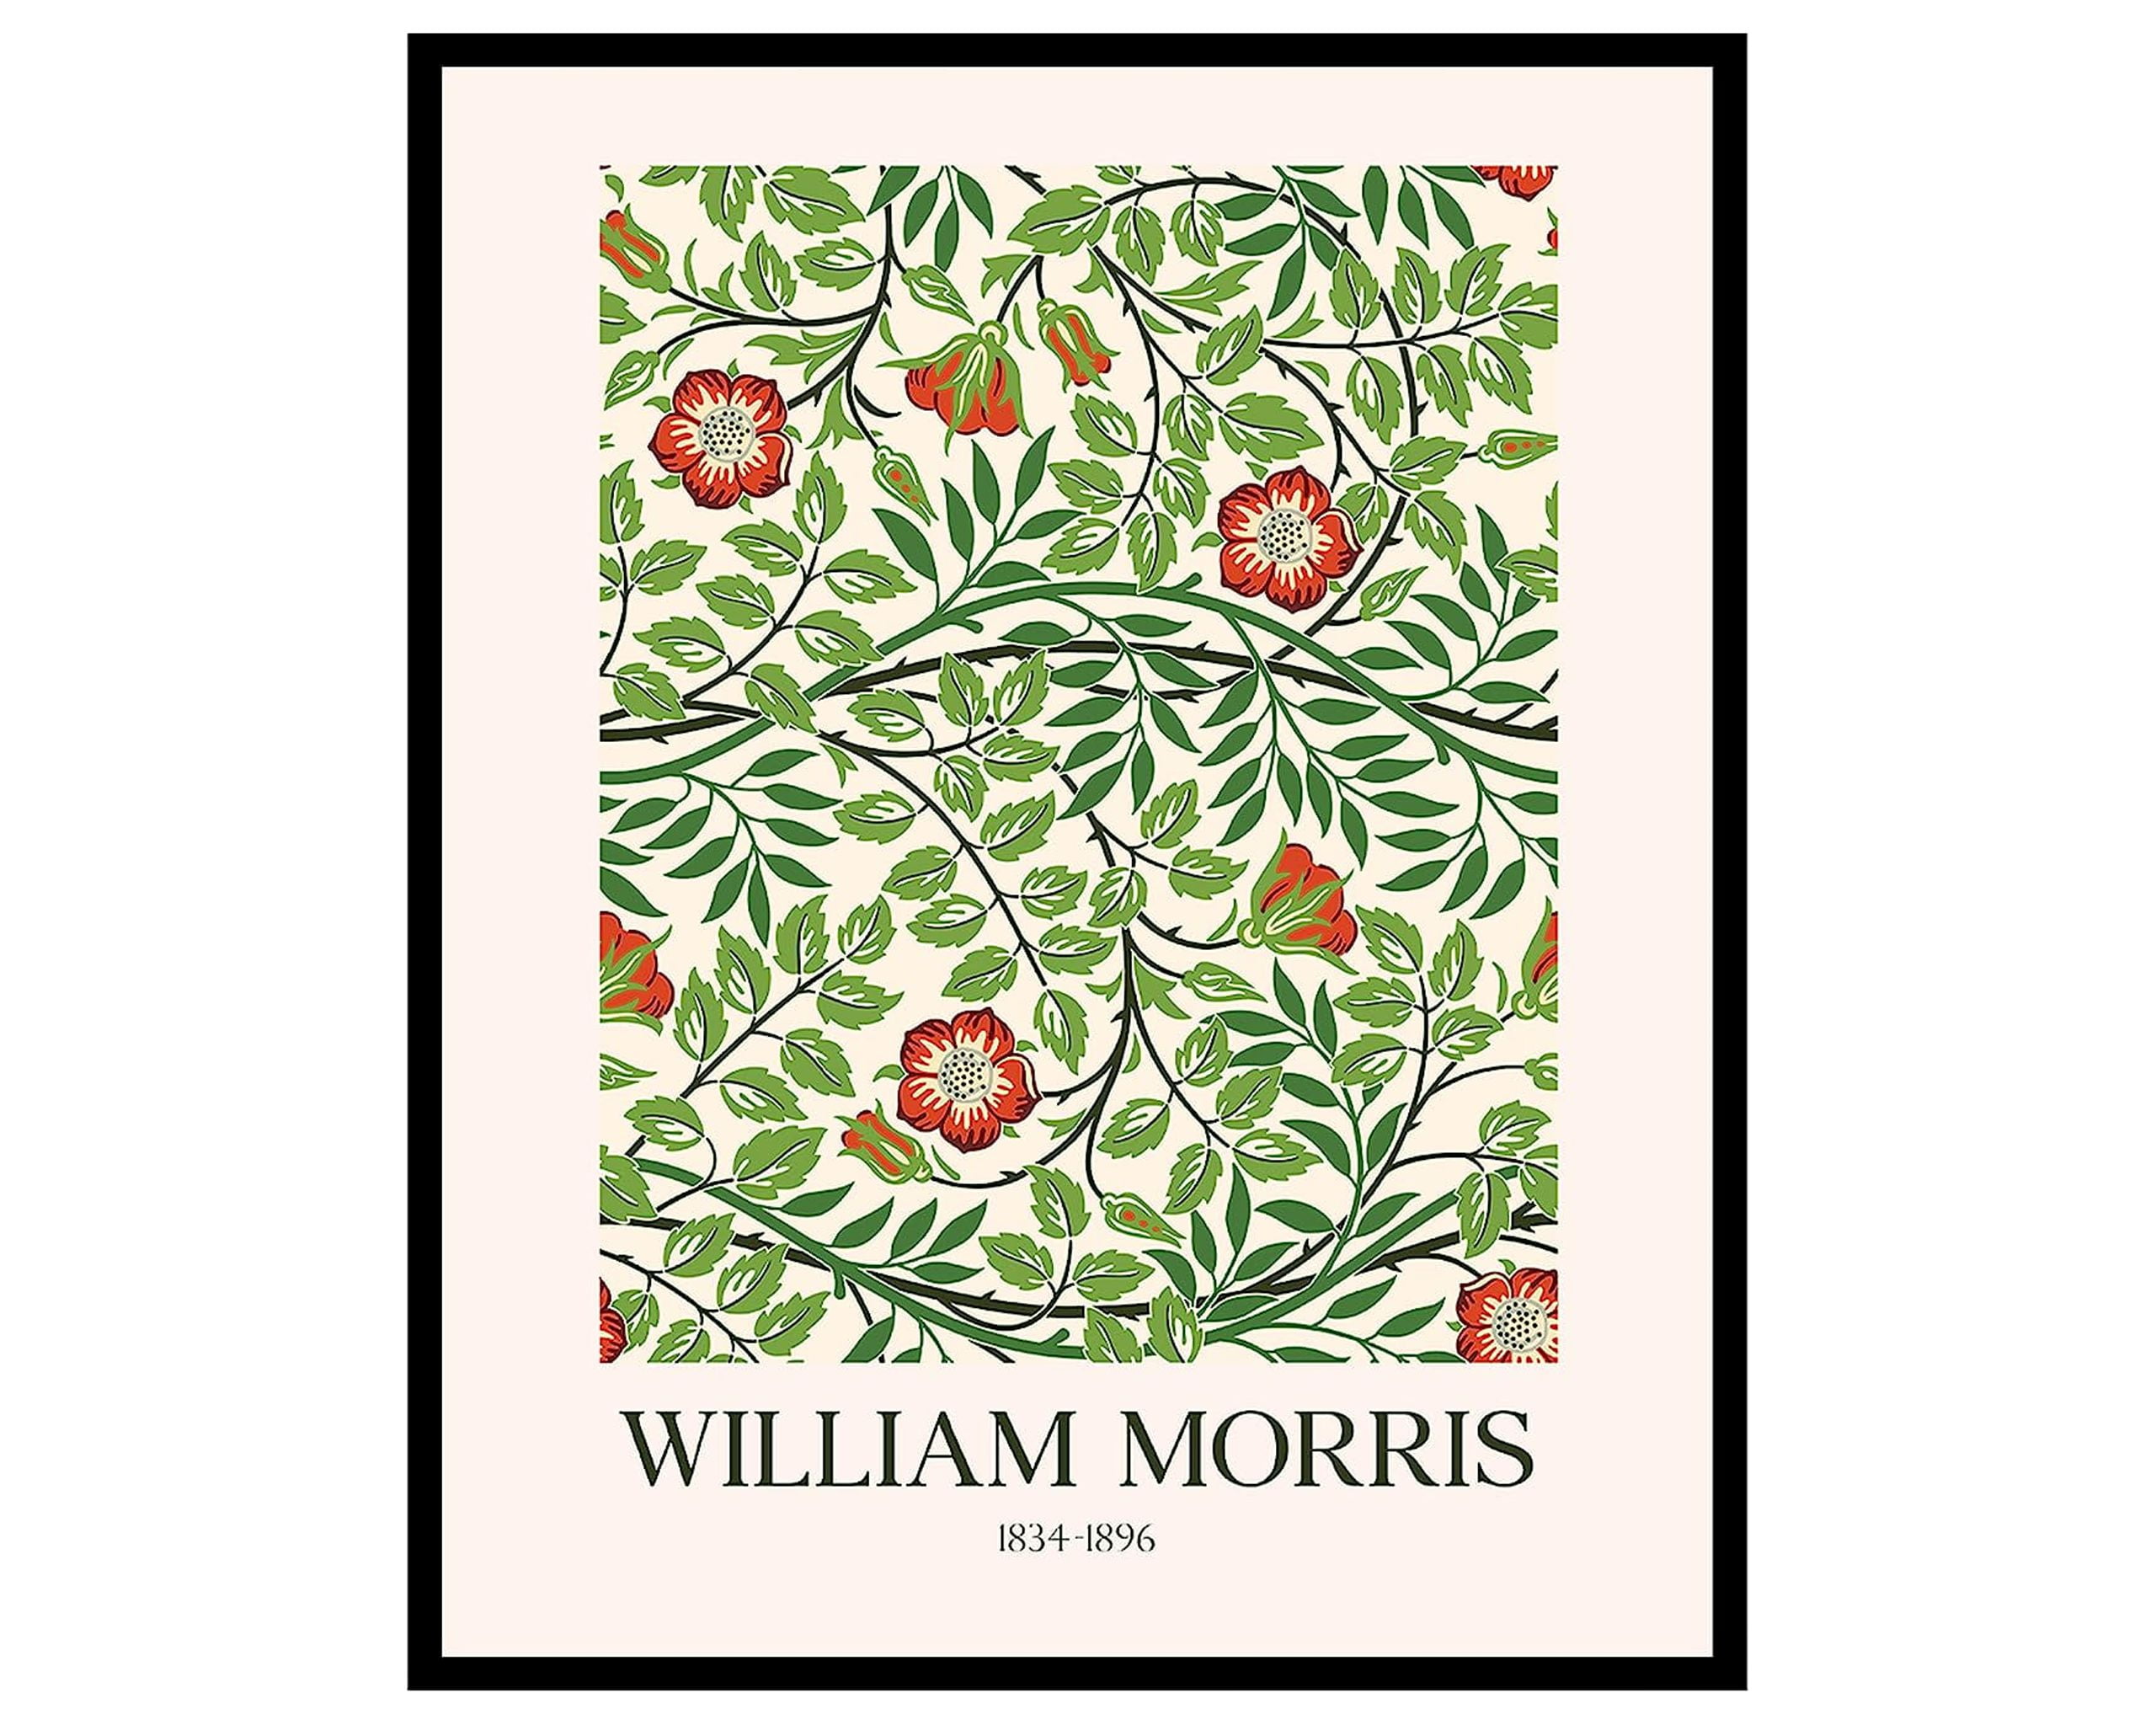 William Morris Print, Morris Exhibition Poster, William Morris Flower  Pattern, Vintage Print, William Morris Décor, Wall Prints, Wall Art 